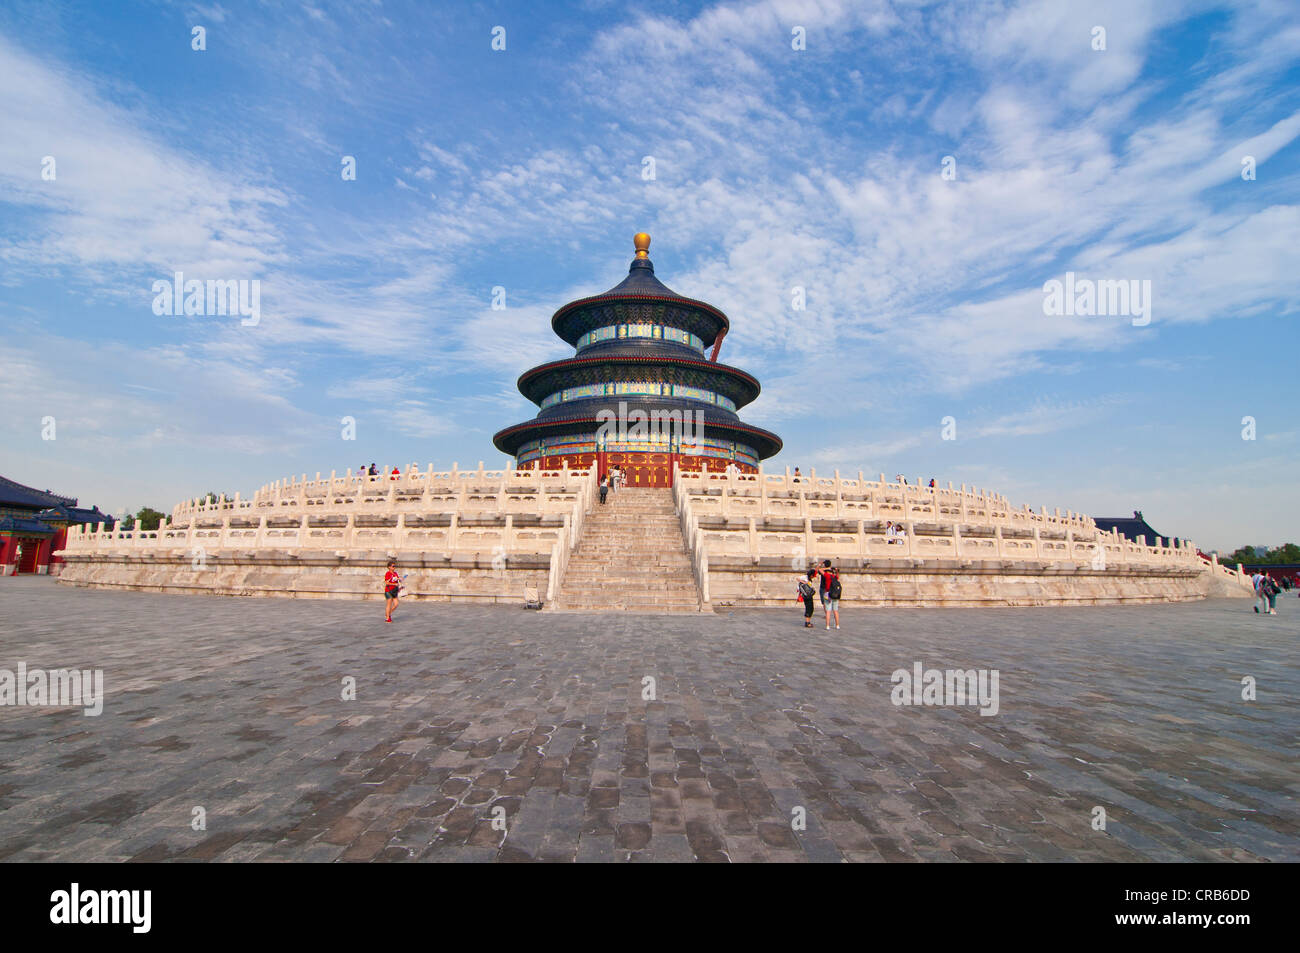 Salle de Prière pour les bonnes récoltes, Temple du Ciel, UNESCO World Heritage Site, Beijing, Chine, Asie Banque D'Images